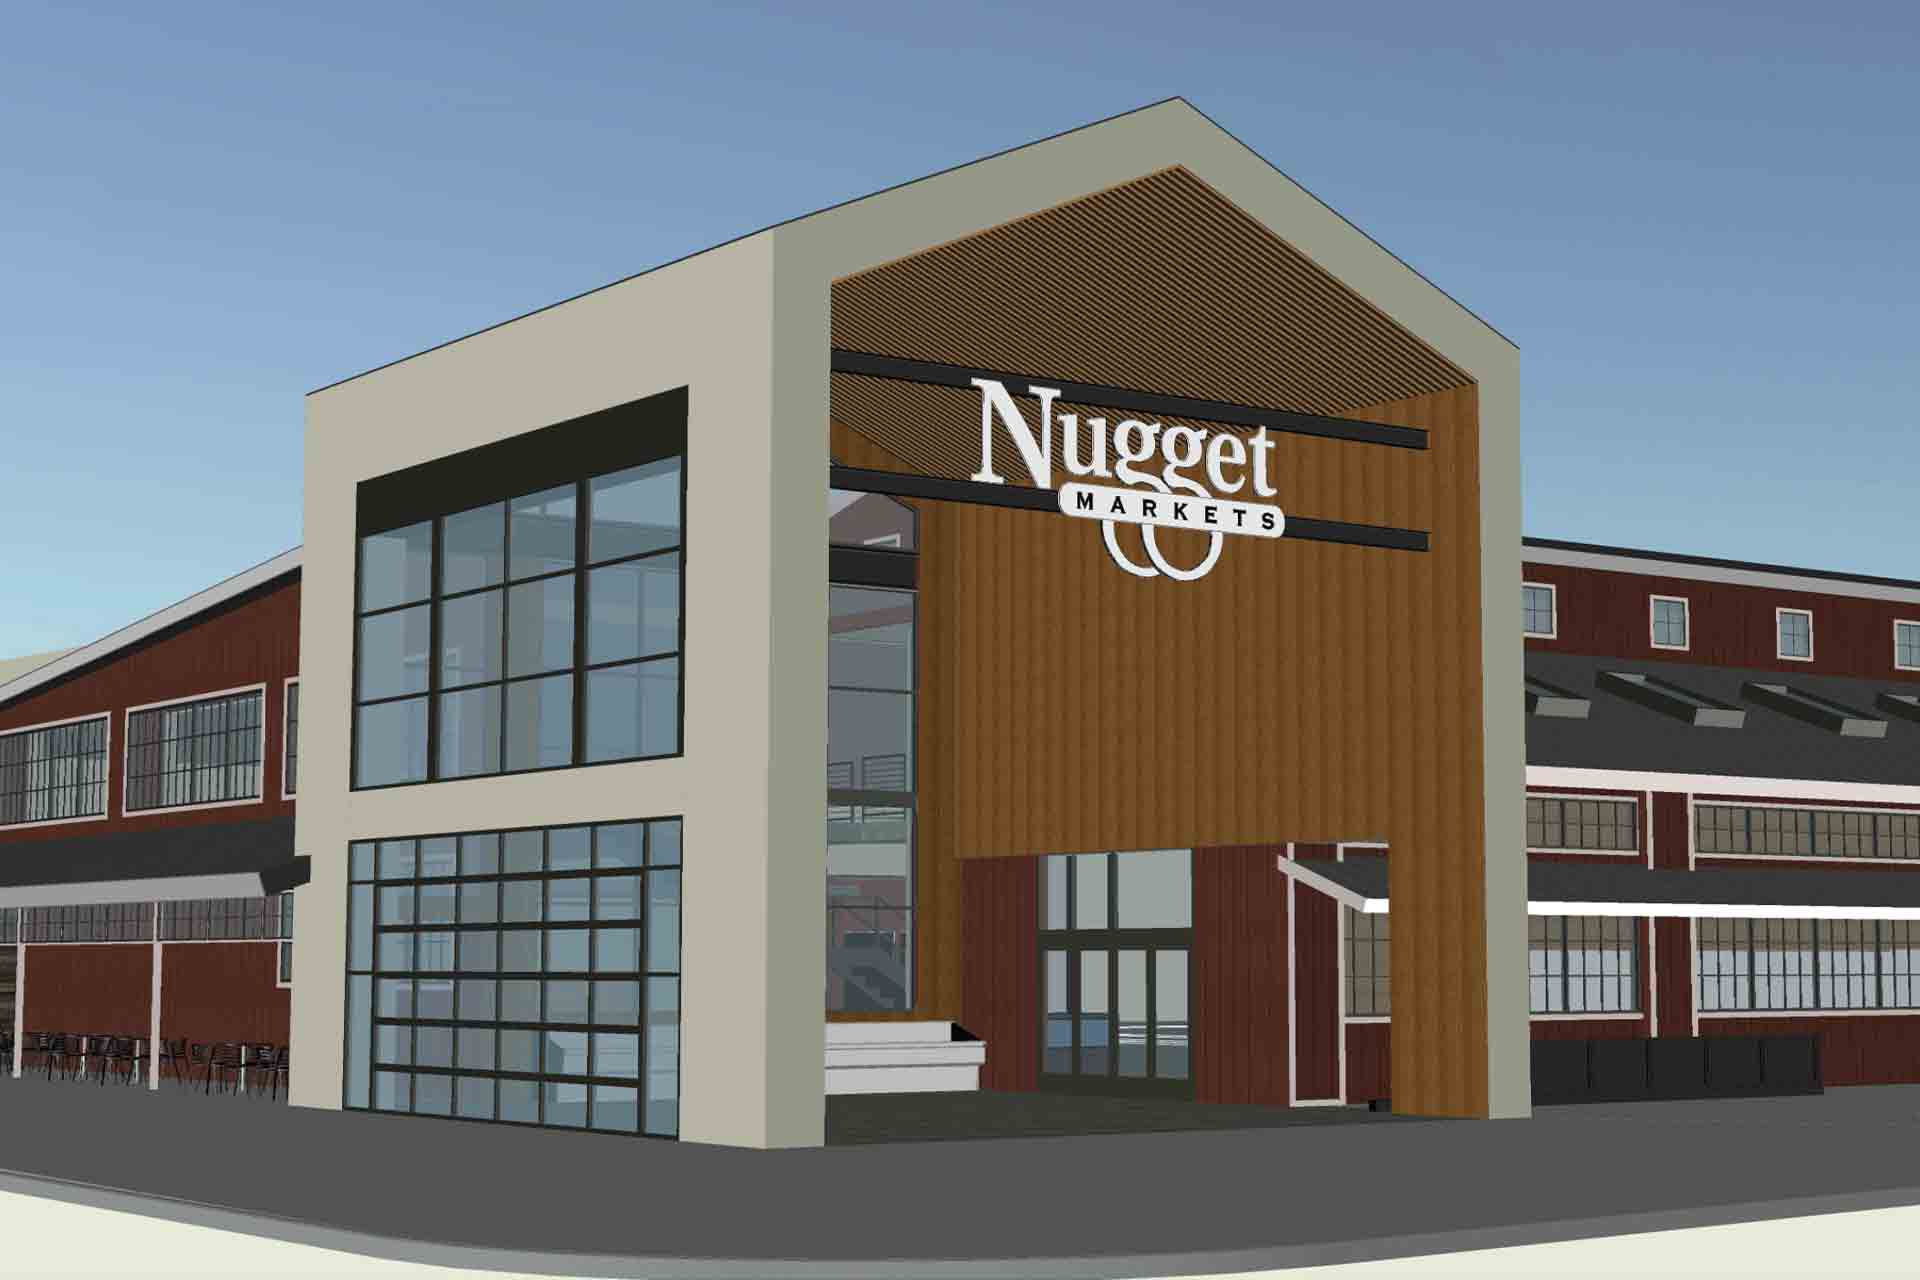 rendering of nugget markets west roseville